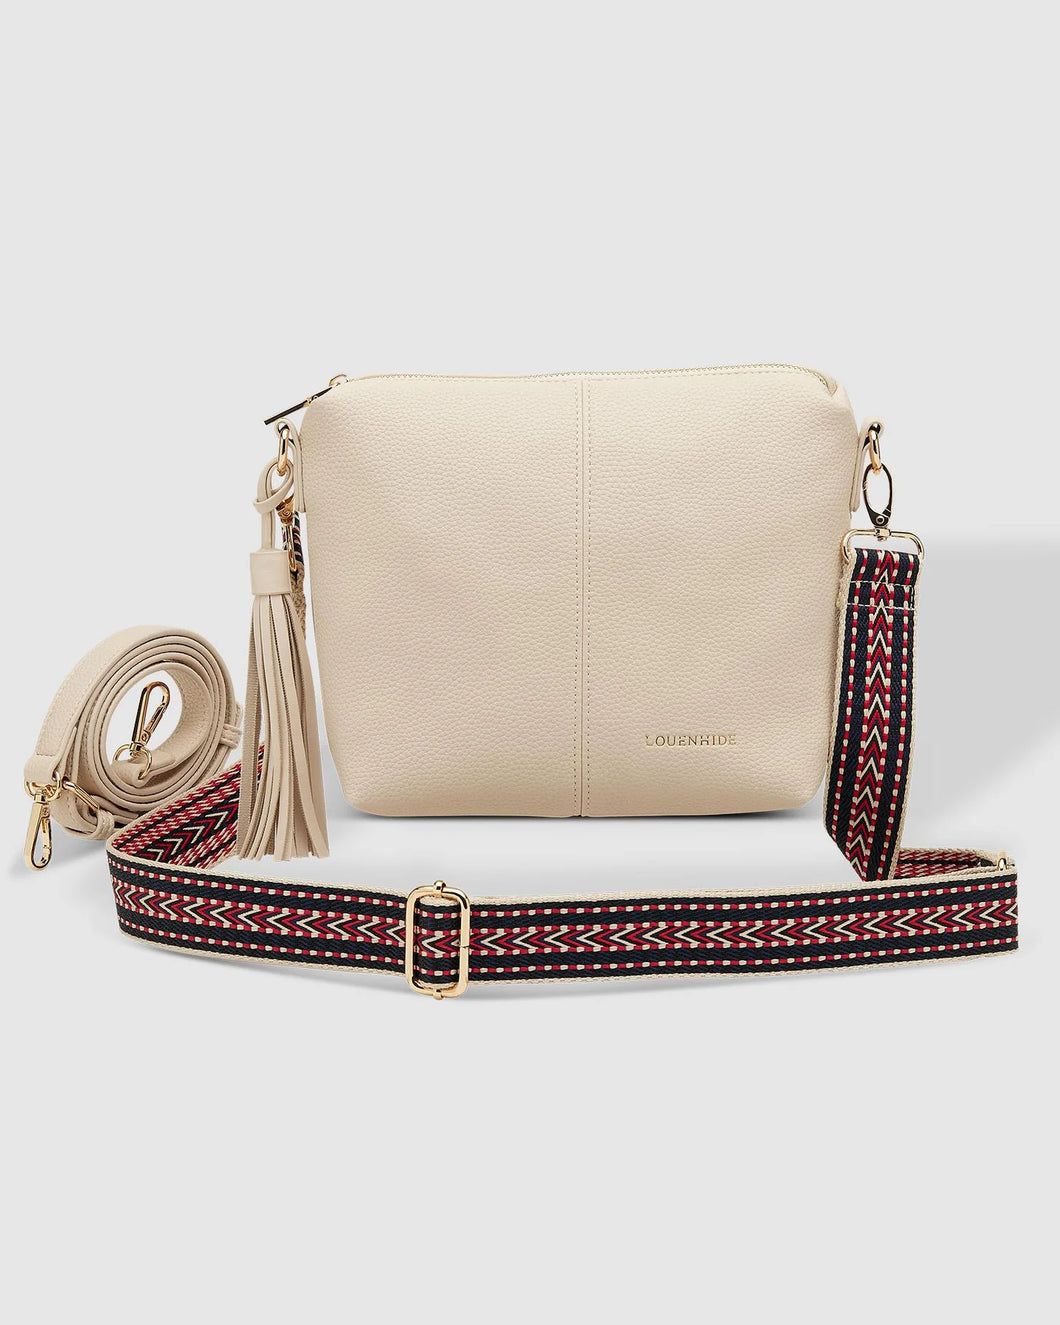 Handbag - Kasey Linen